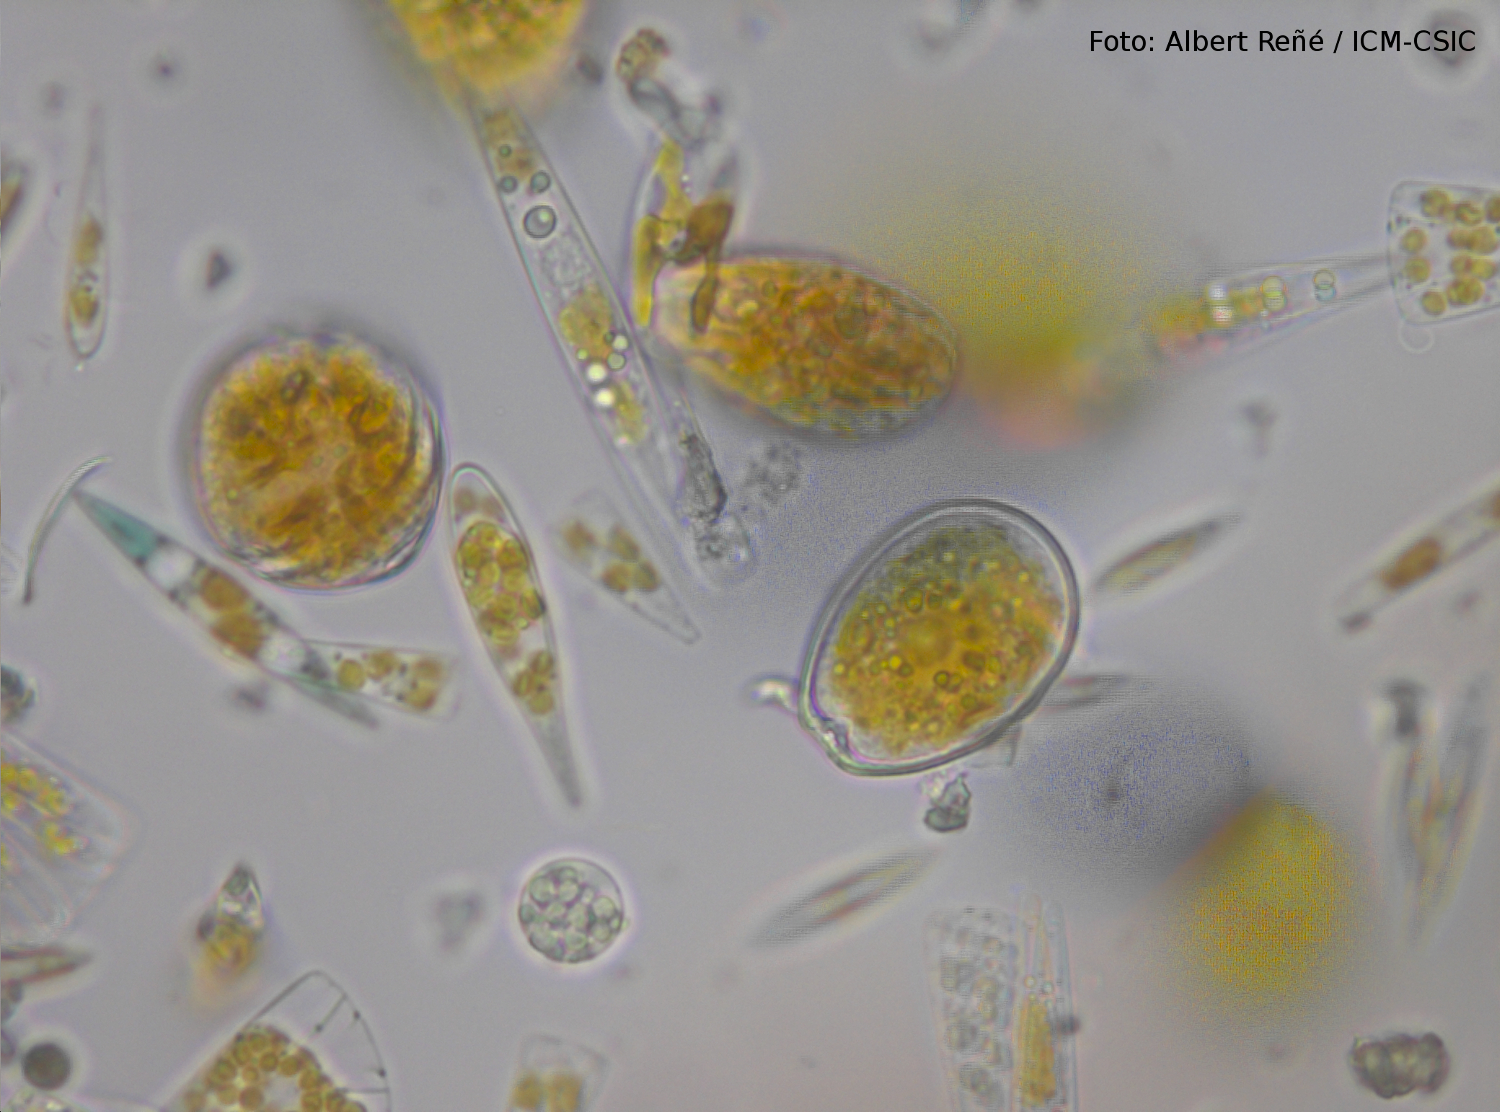 Muestras costeras de plancton vistas al microscopio. Foto: Albert Reñé / ICM-CSIC